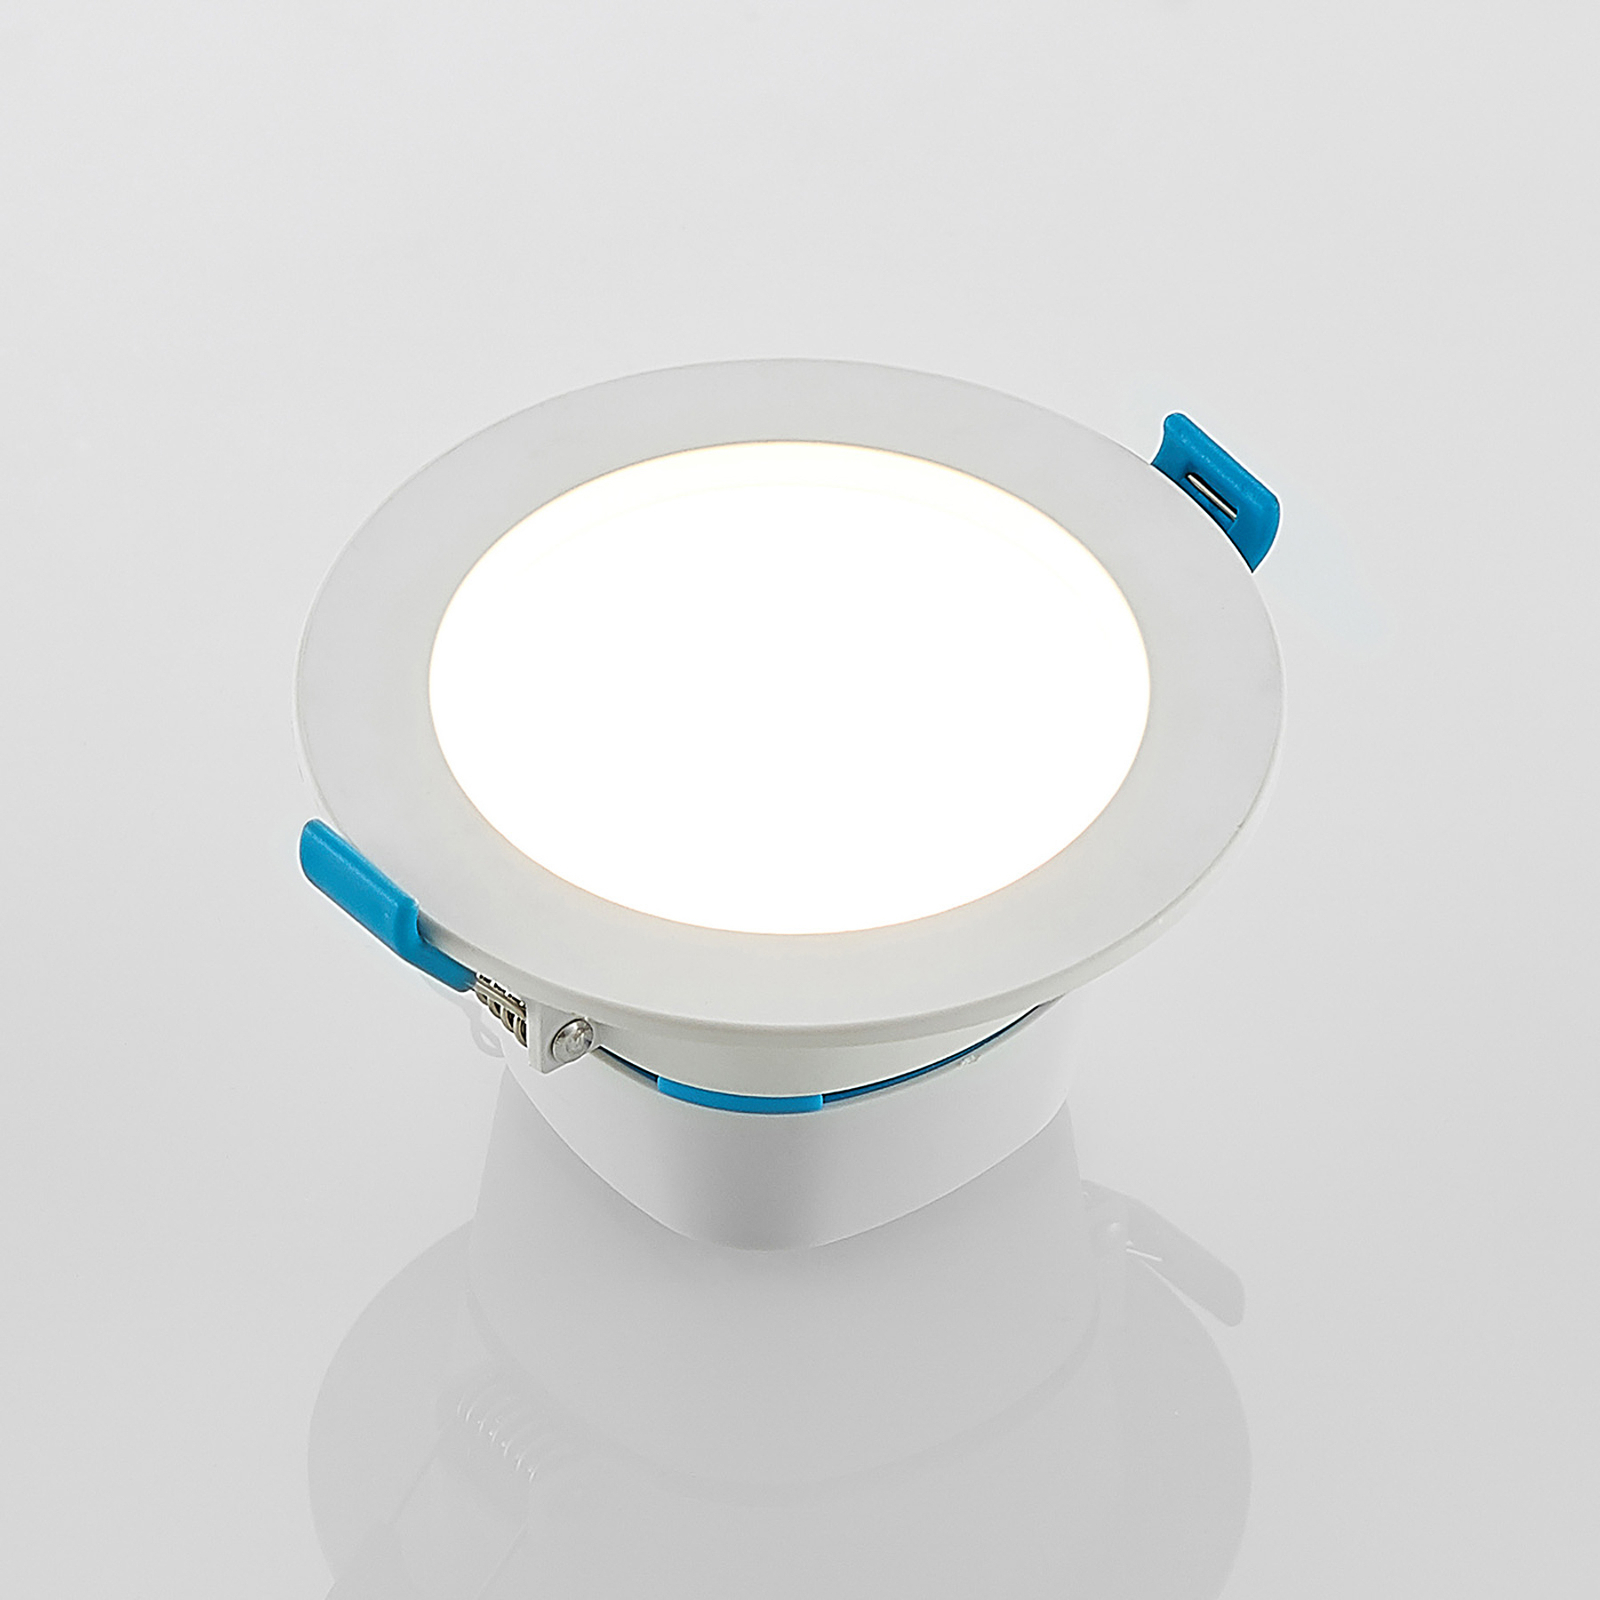 "Arcchio" LED įleidžiamoji lempa "Milaine", balta, reguliuojamo ryškumo,